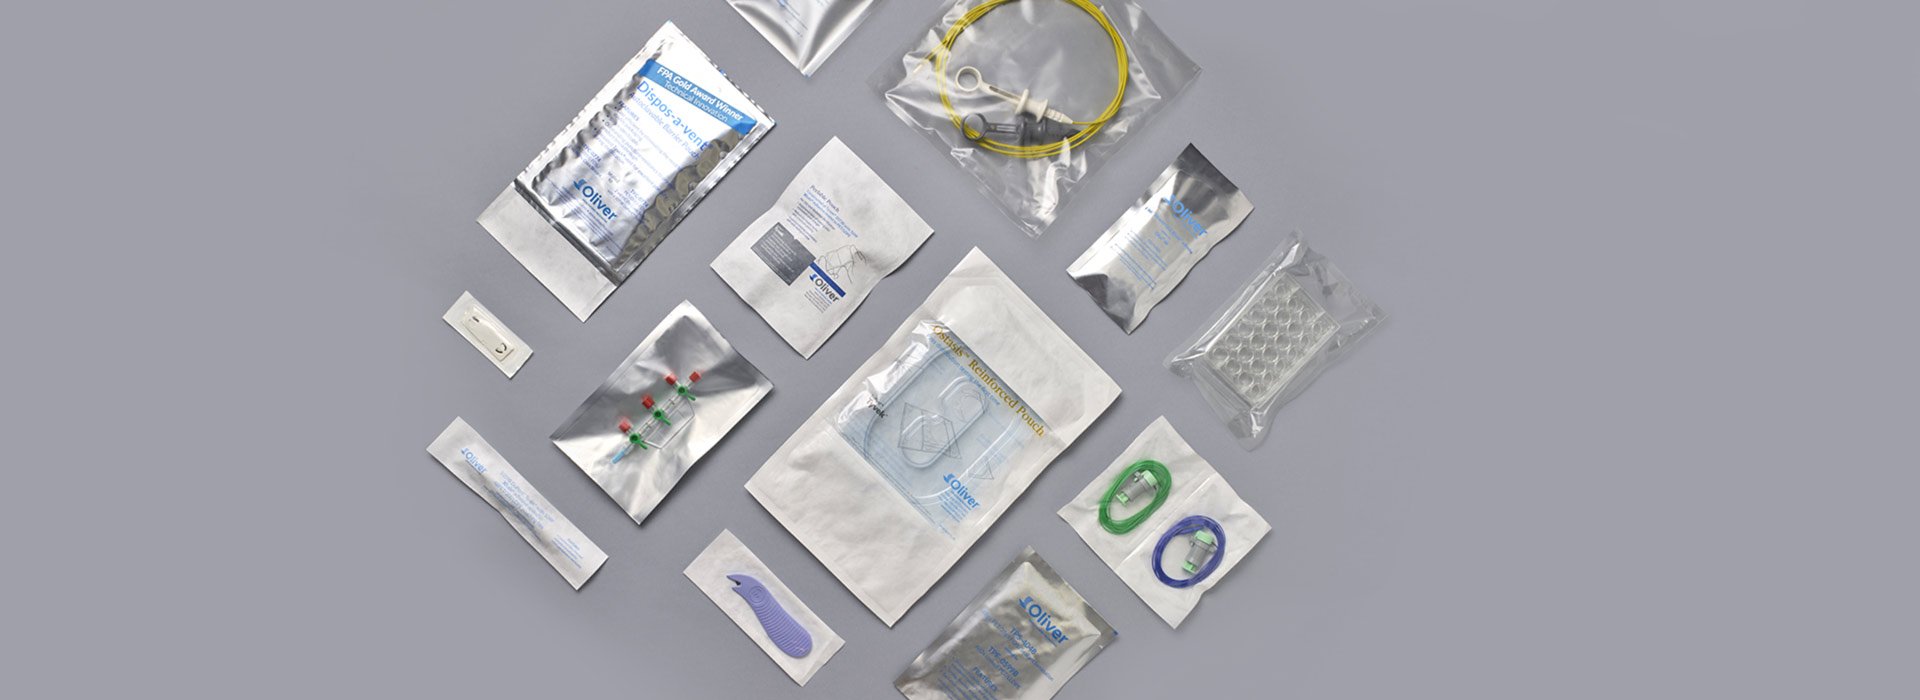 의료용 및 제약용 파우치 포장 | Oliver Healthcare Packaging